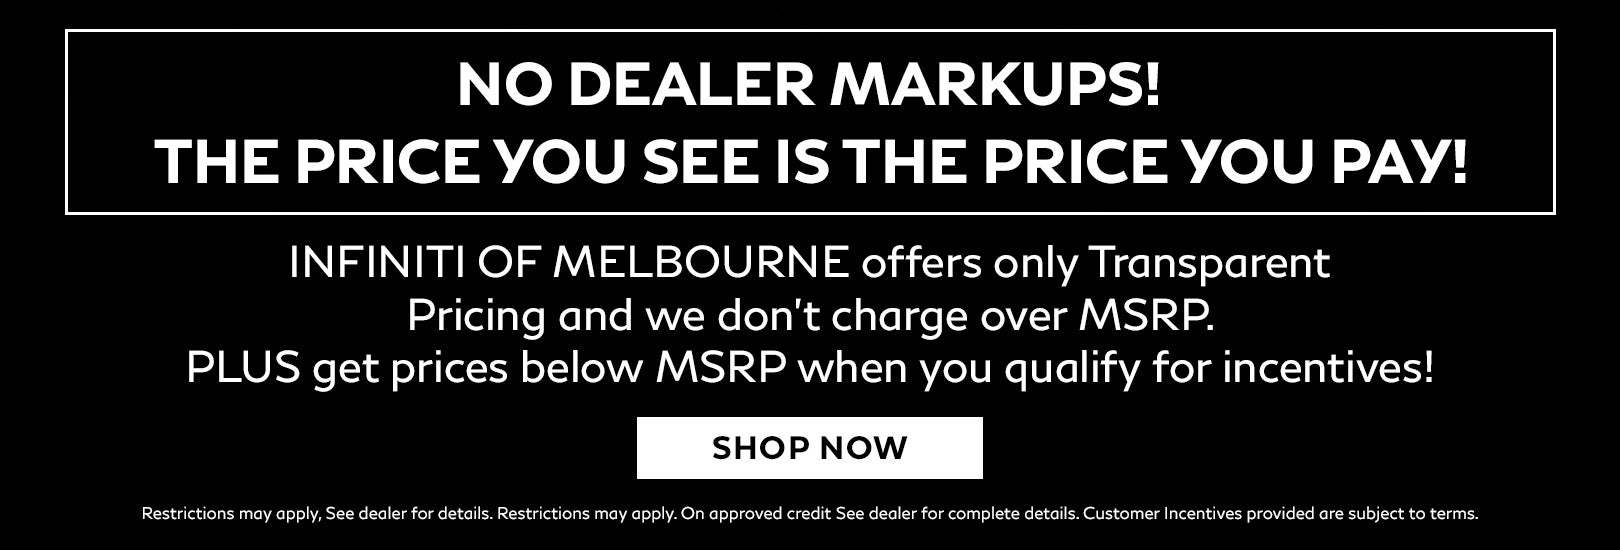 No Dealer Markups